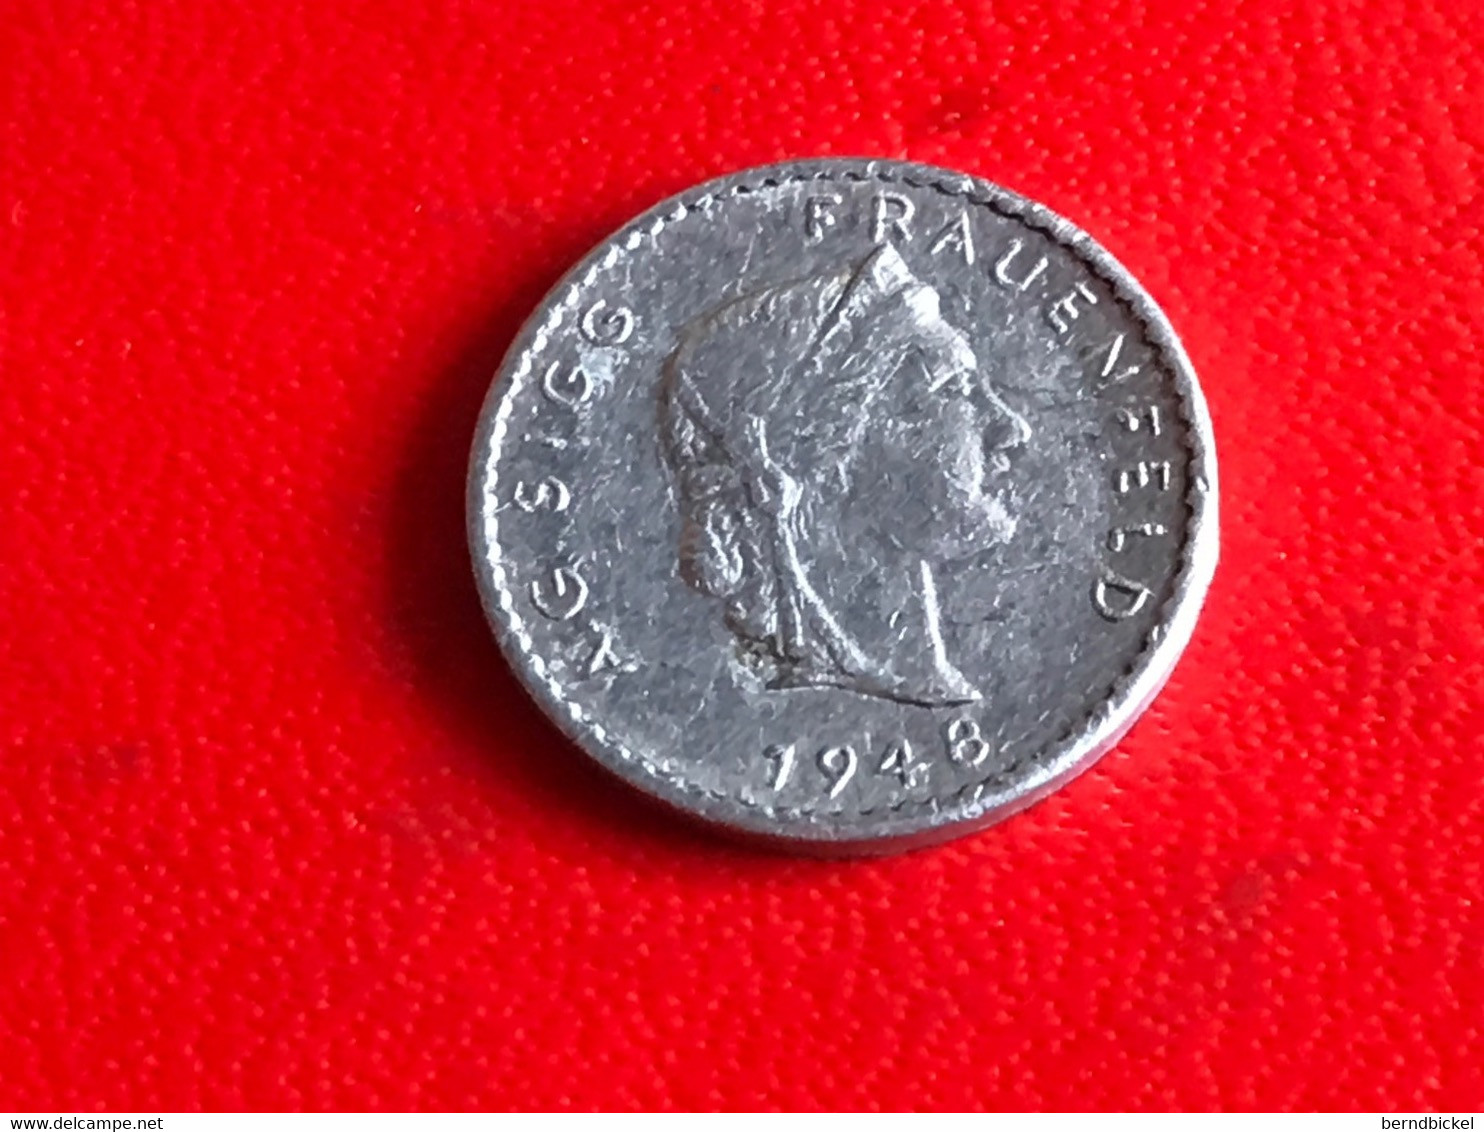 AG Sigg Frauenfeld Schweiz 1948 " 10 " - Monedas Elongadas (elongated Coins)